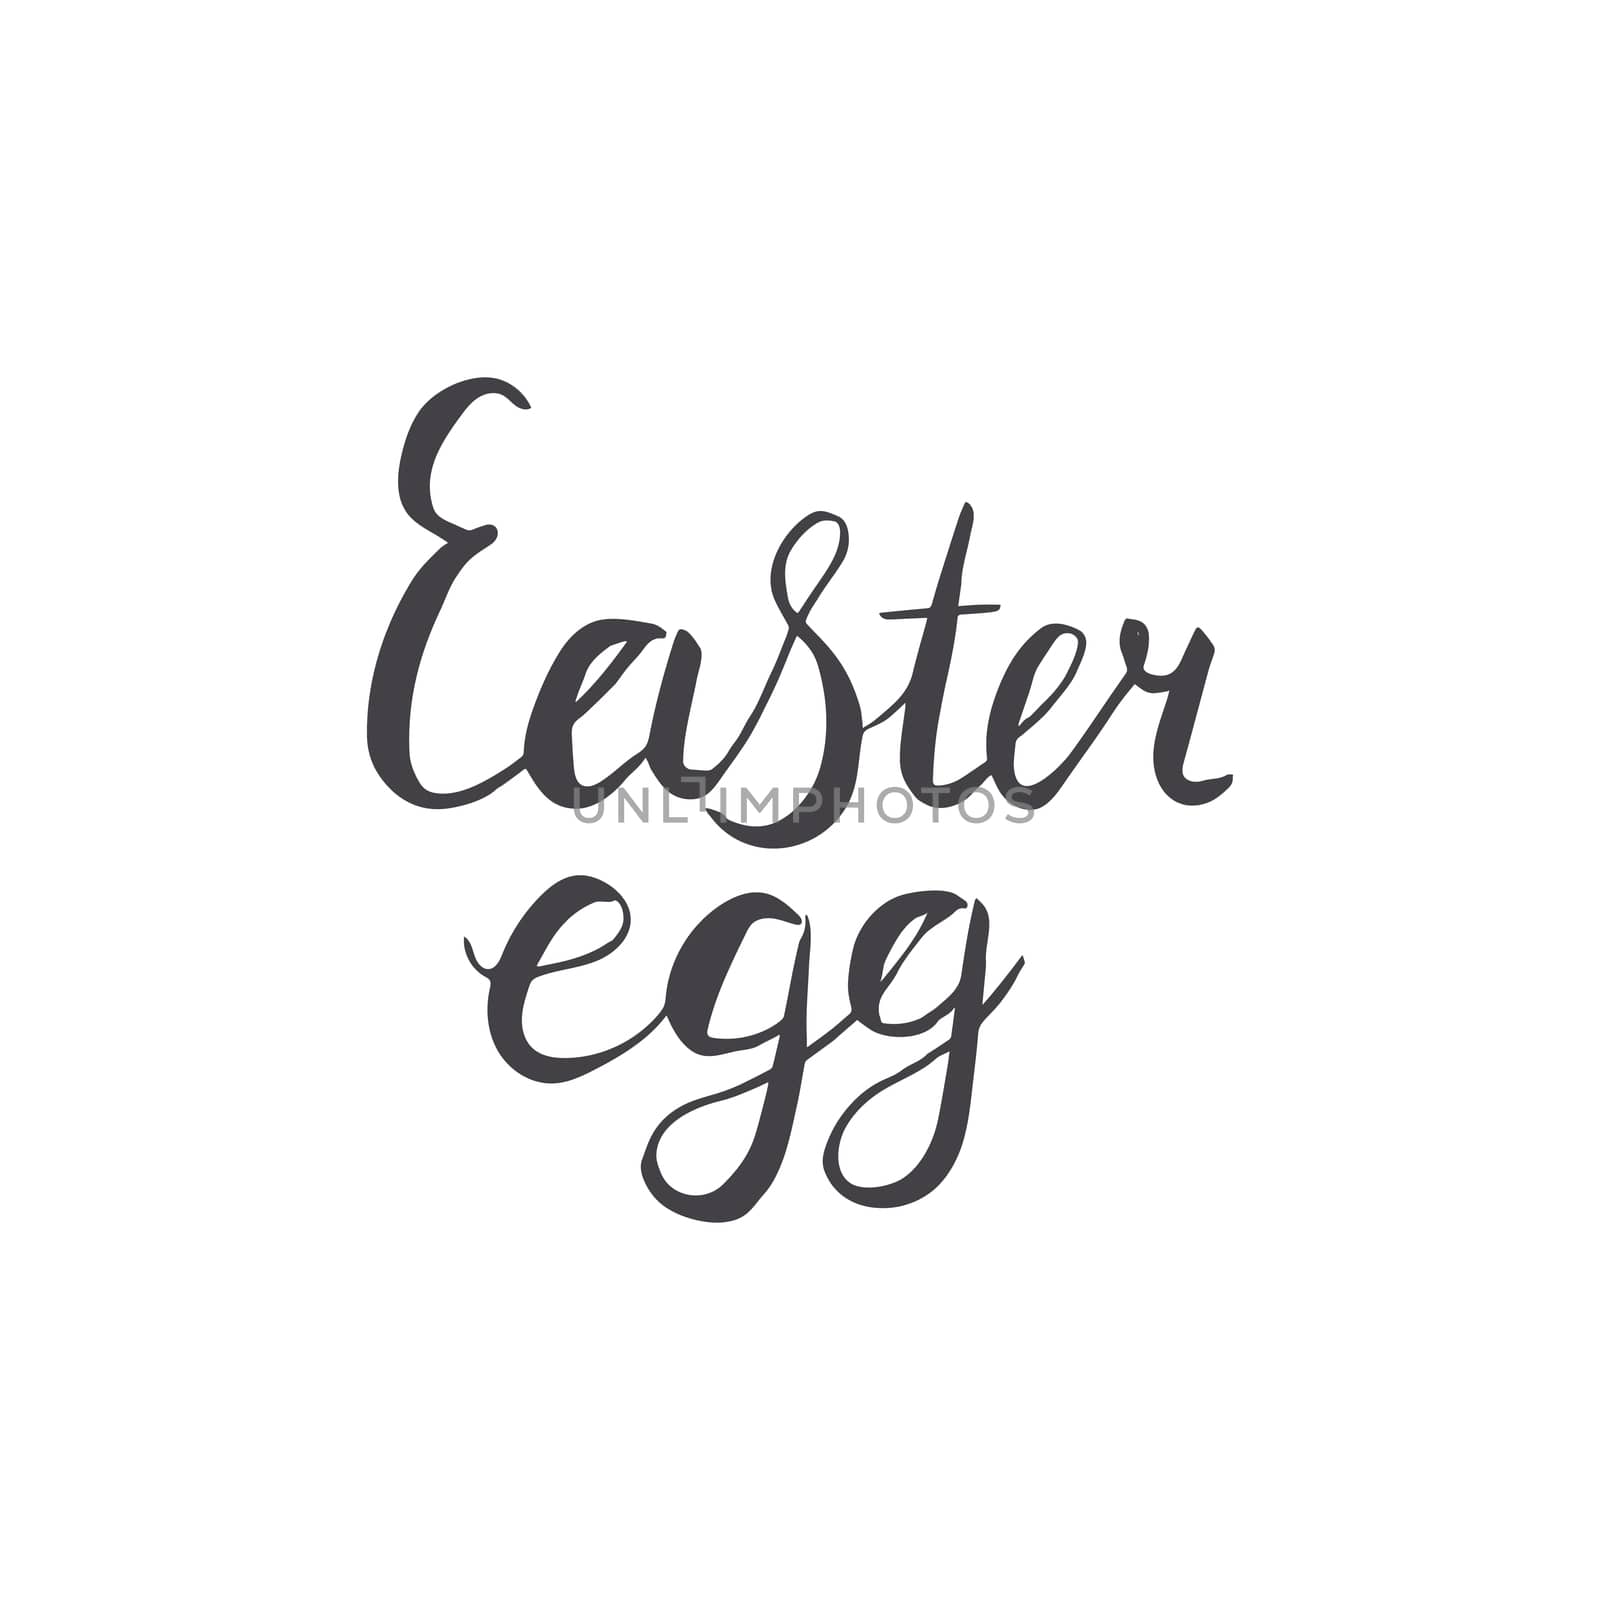 Easter egg hand lettering in black. by Nata_Prando